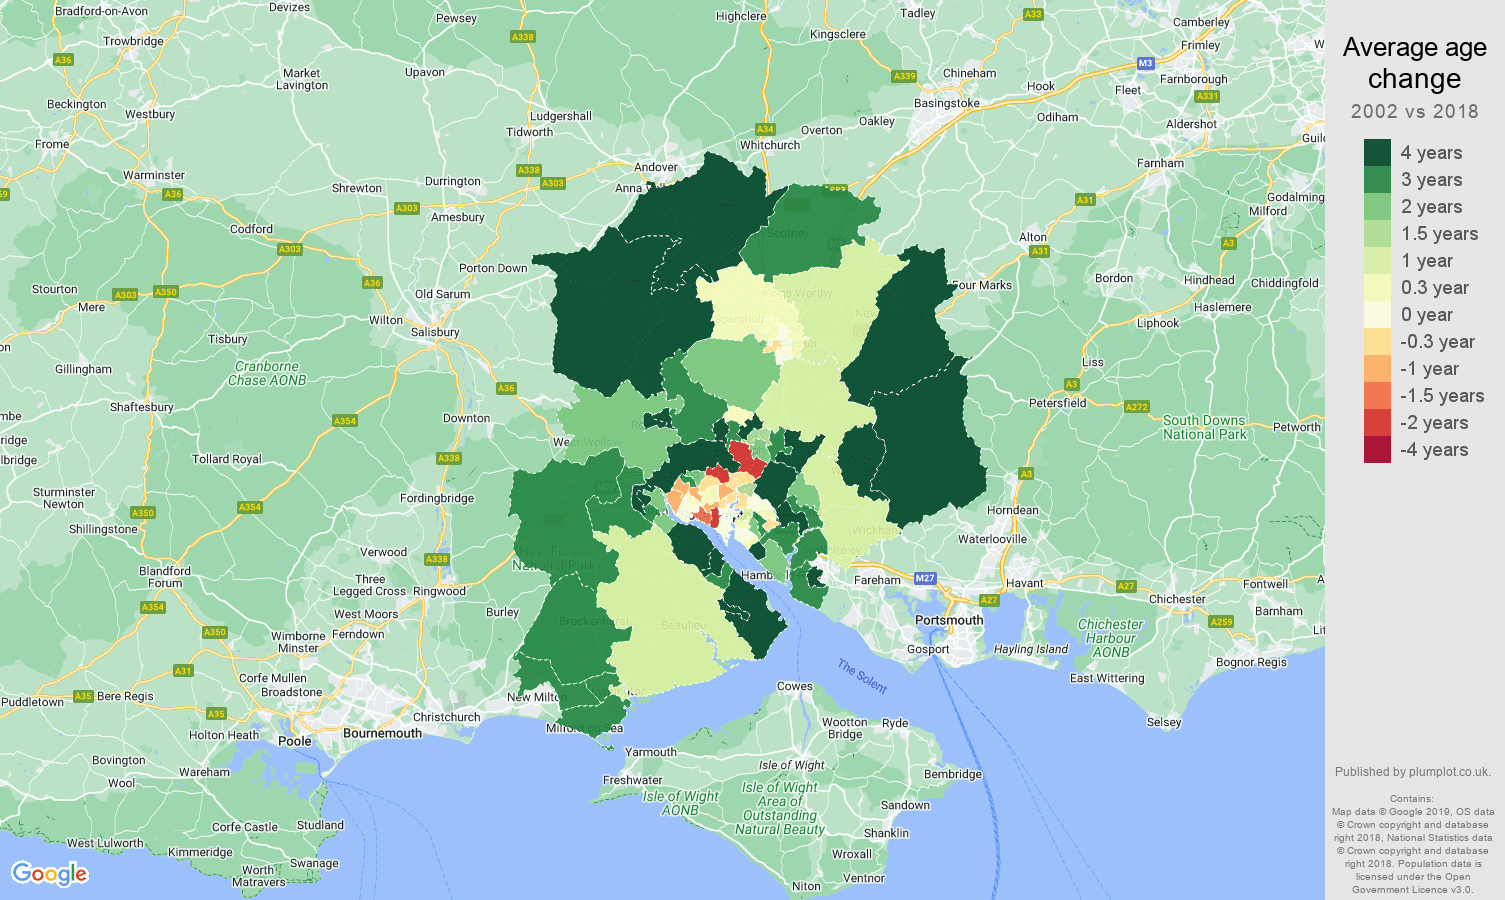 Southampton average age change map